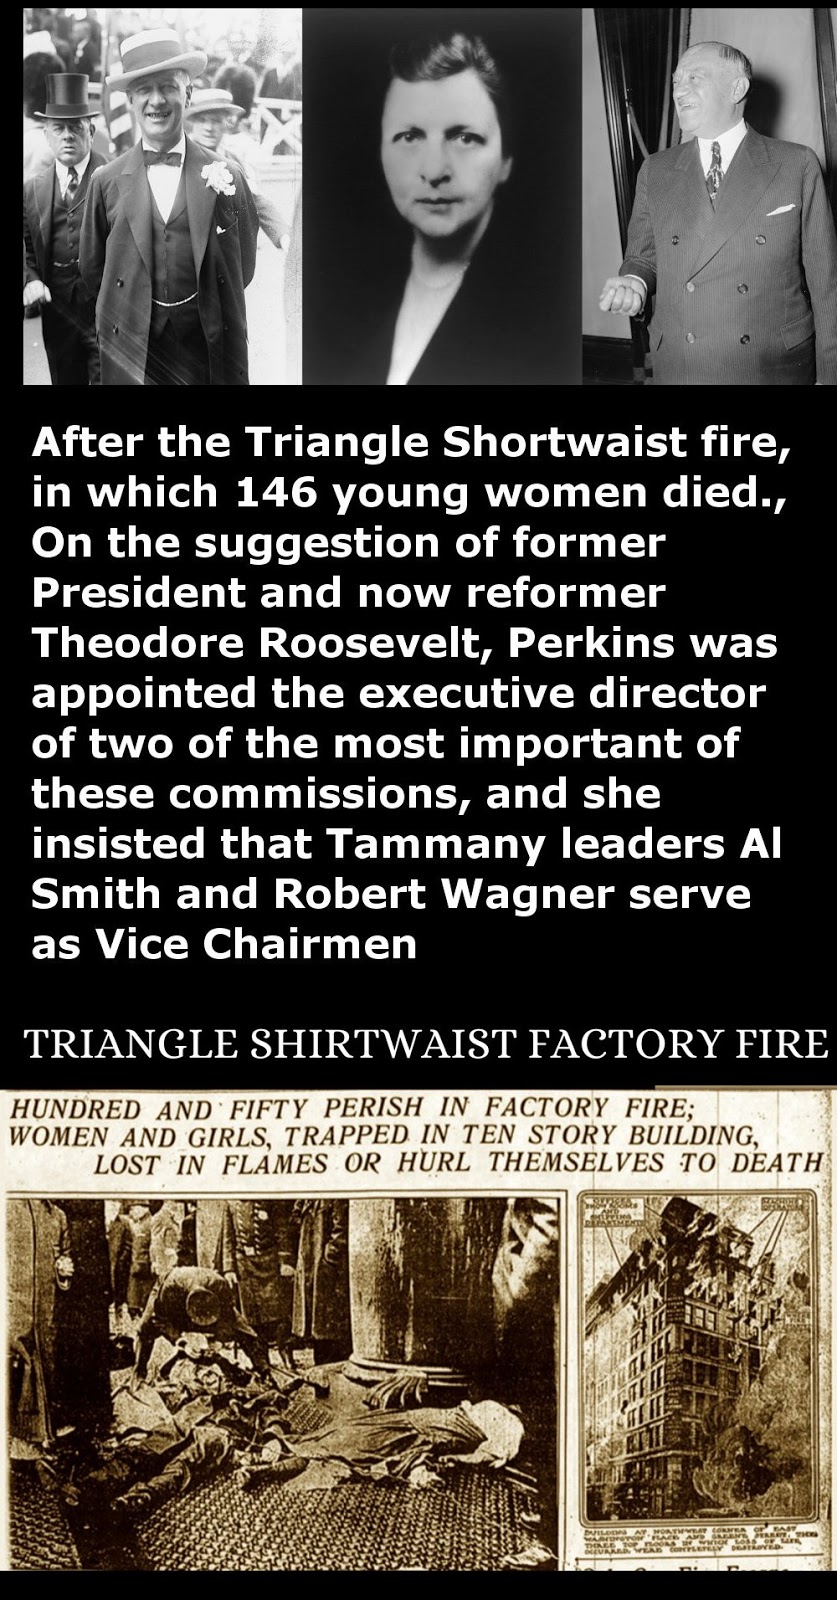 Triangle shirtwaist factory fire facts